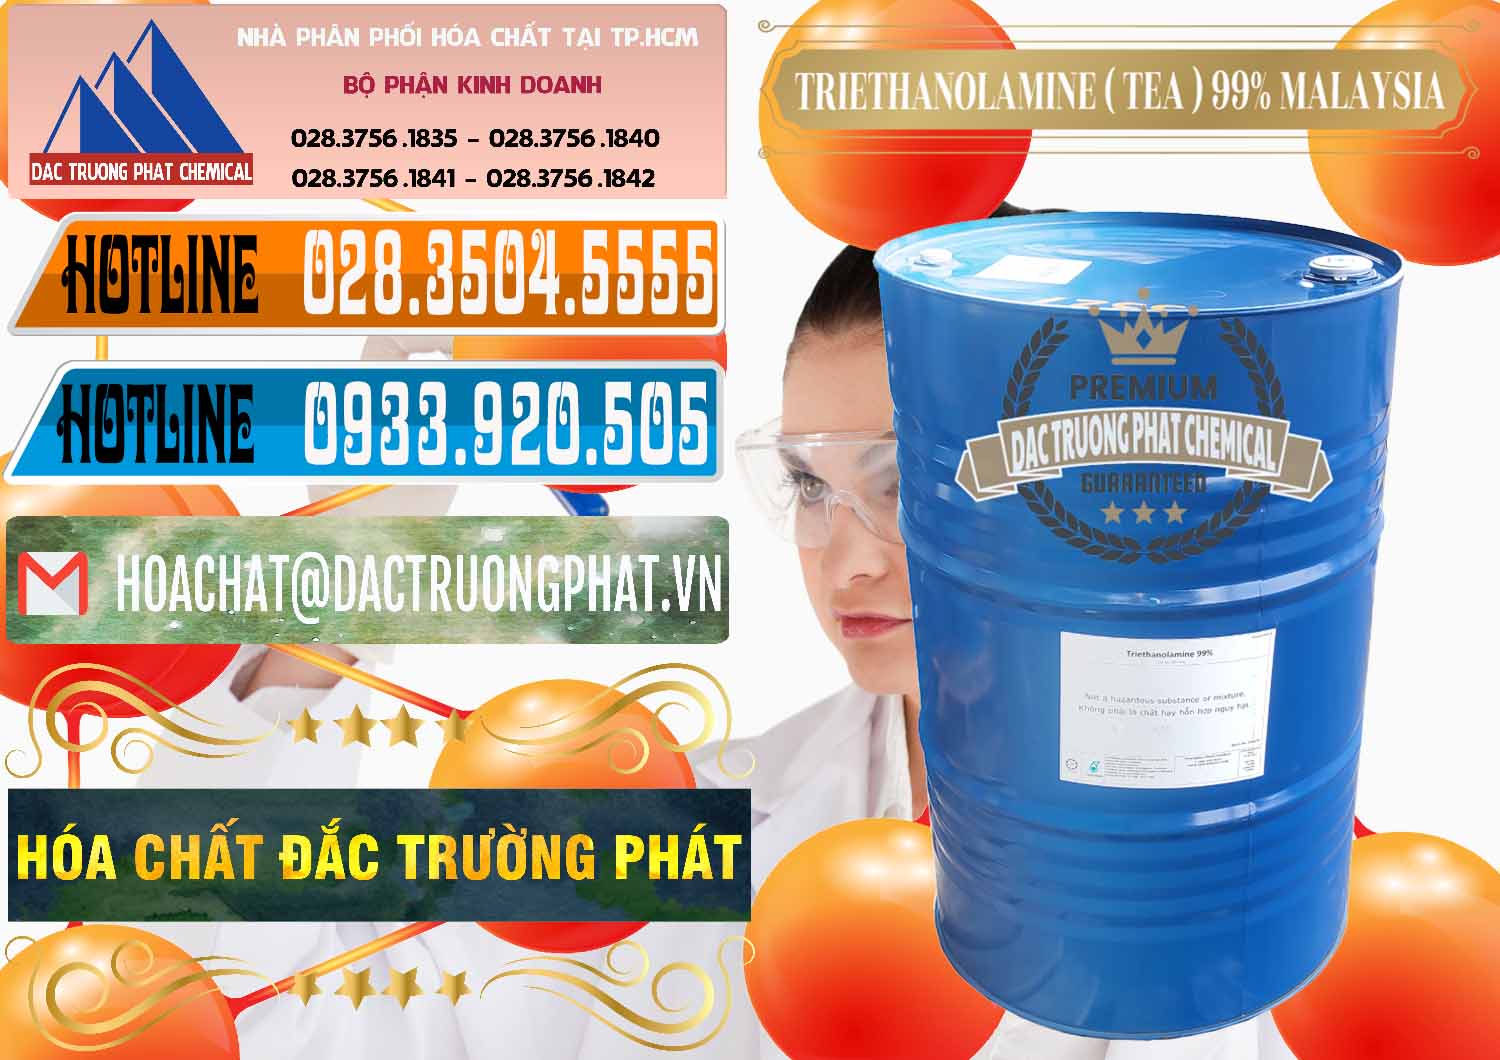 Công ty bán ( cung ứng ) TEA - Triethanolamine 99% Mã Lai Malaysia - 0323 - Cty chuyên phân phối và bán hóa chất tại TP.HCM - stmp.net